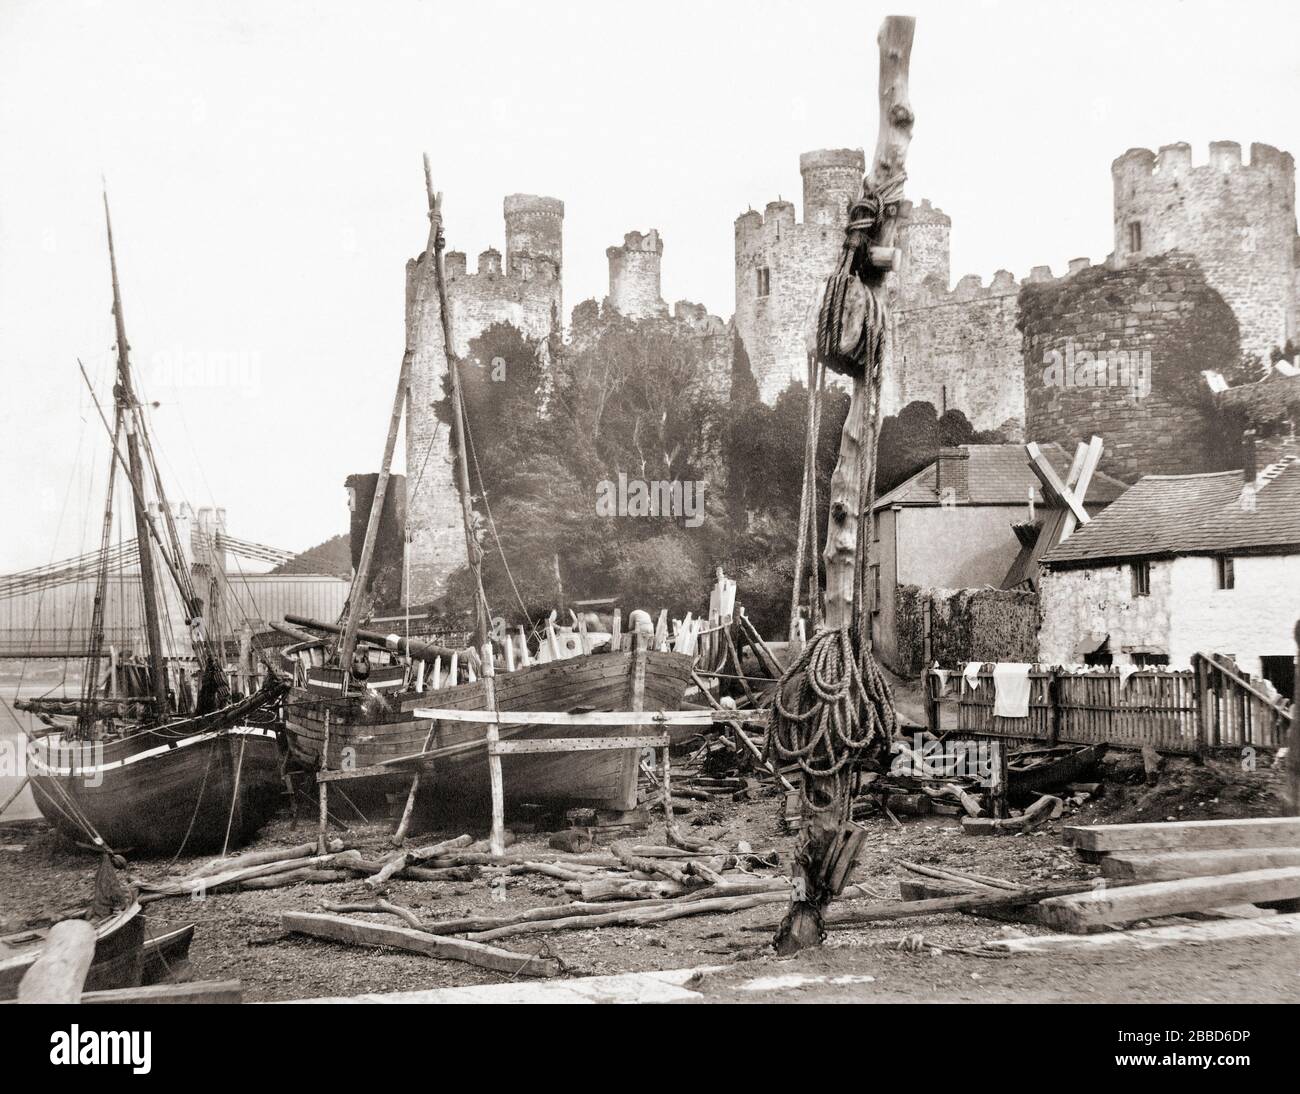 Conwy château avec bateaux en premier plan, Conwy, Pays de Galles, Royaume-Uni. Prise vers 1850 par le photographe anglais Alfred Rosling, 1802 - 1882 et publiée par Francis Frith. Banque D'Images